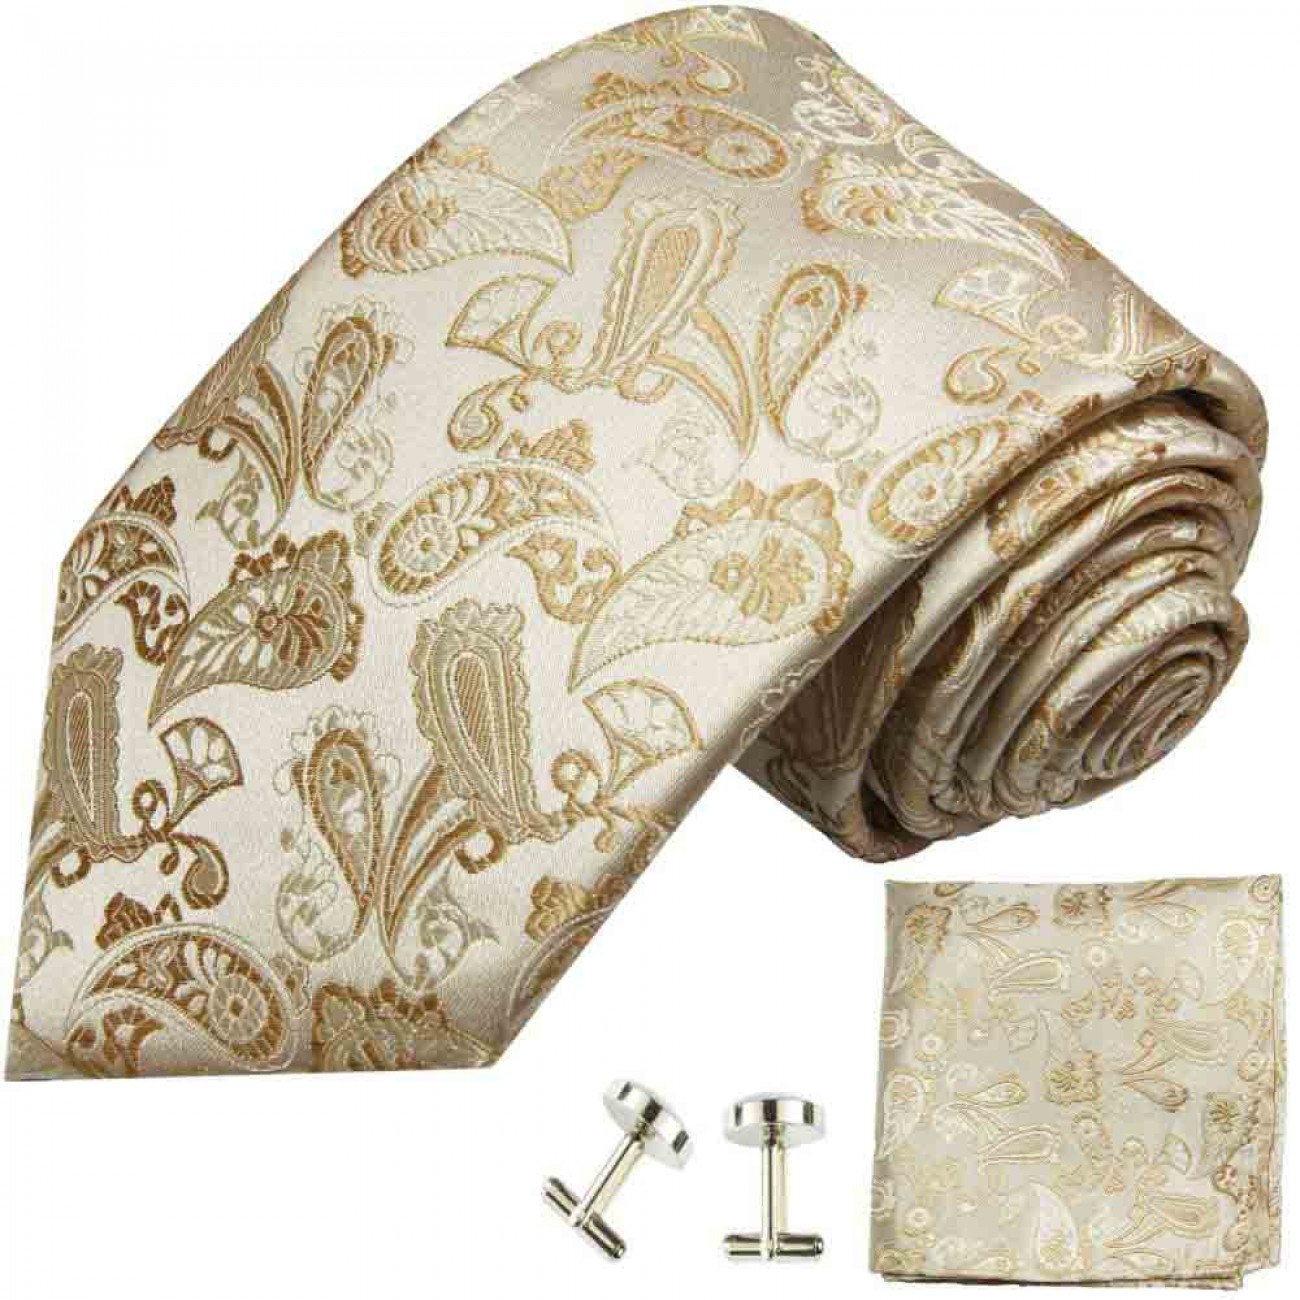 Krawatte ivory braun paisley Seidenkrawatte - Seide - Krawatte mit Einstecktuch und Manschettenknöpfe